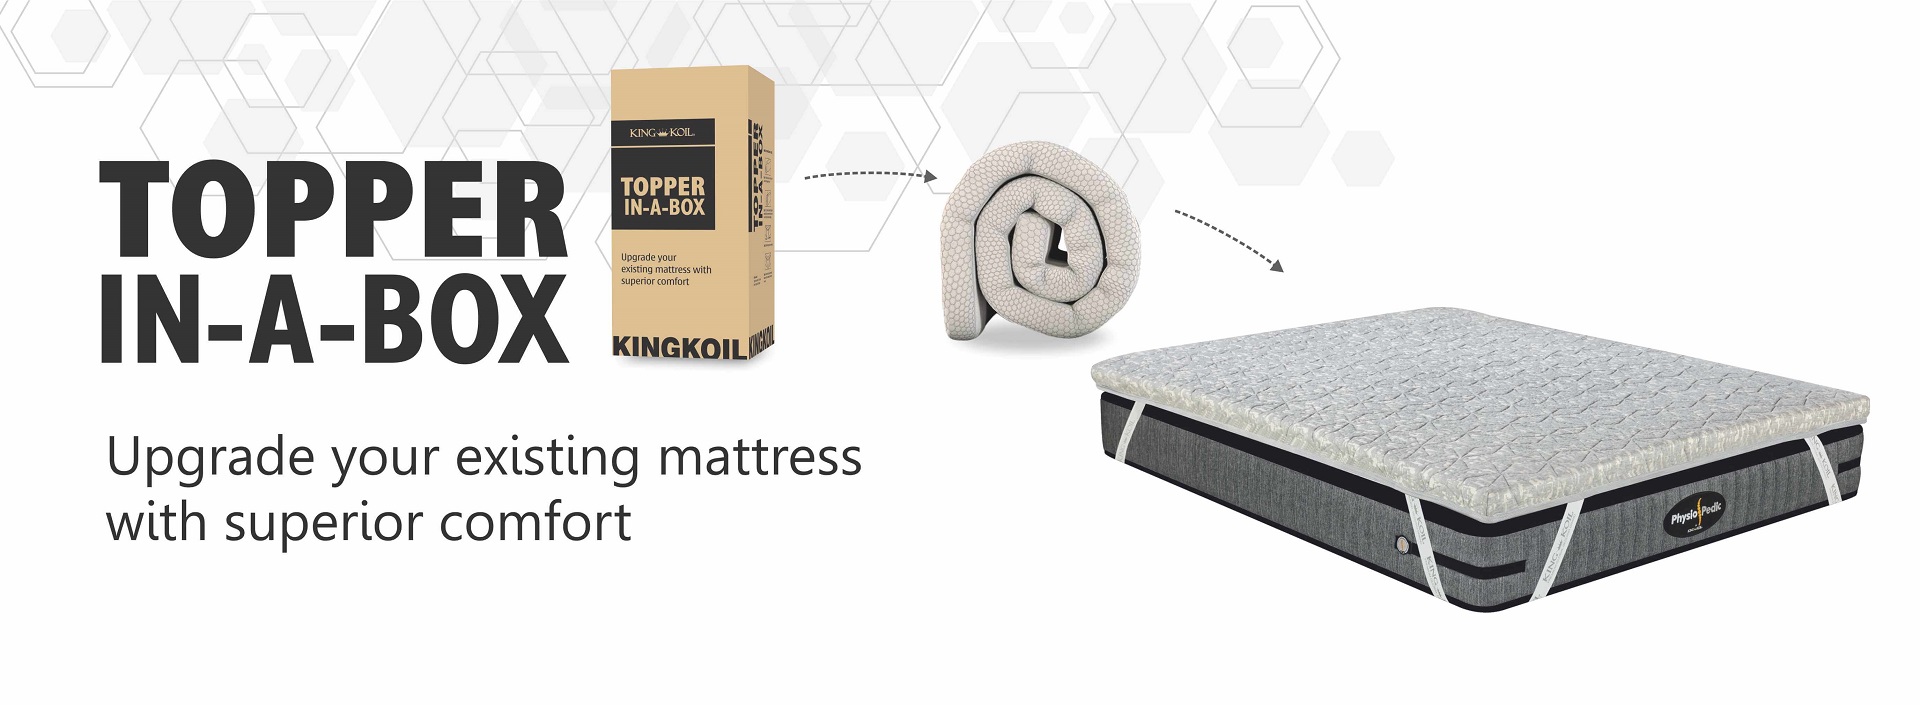 mattress topper in india